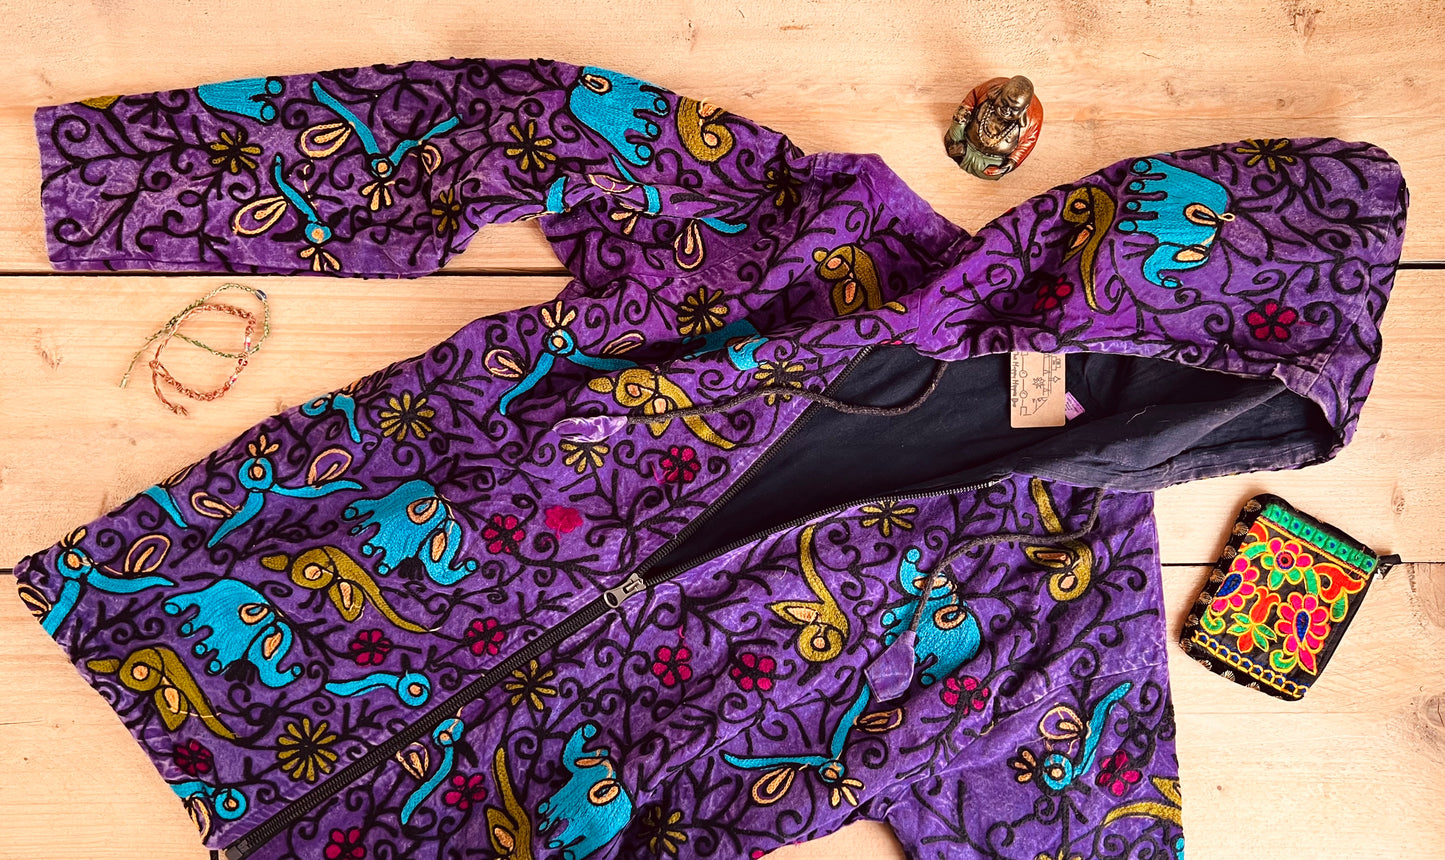 Embroidered Elephant Hooded Jacket - Purple